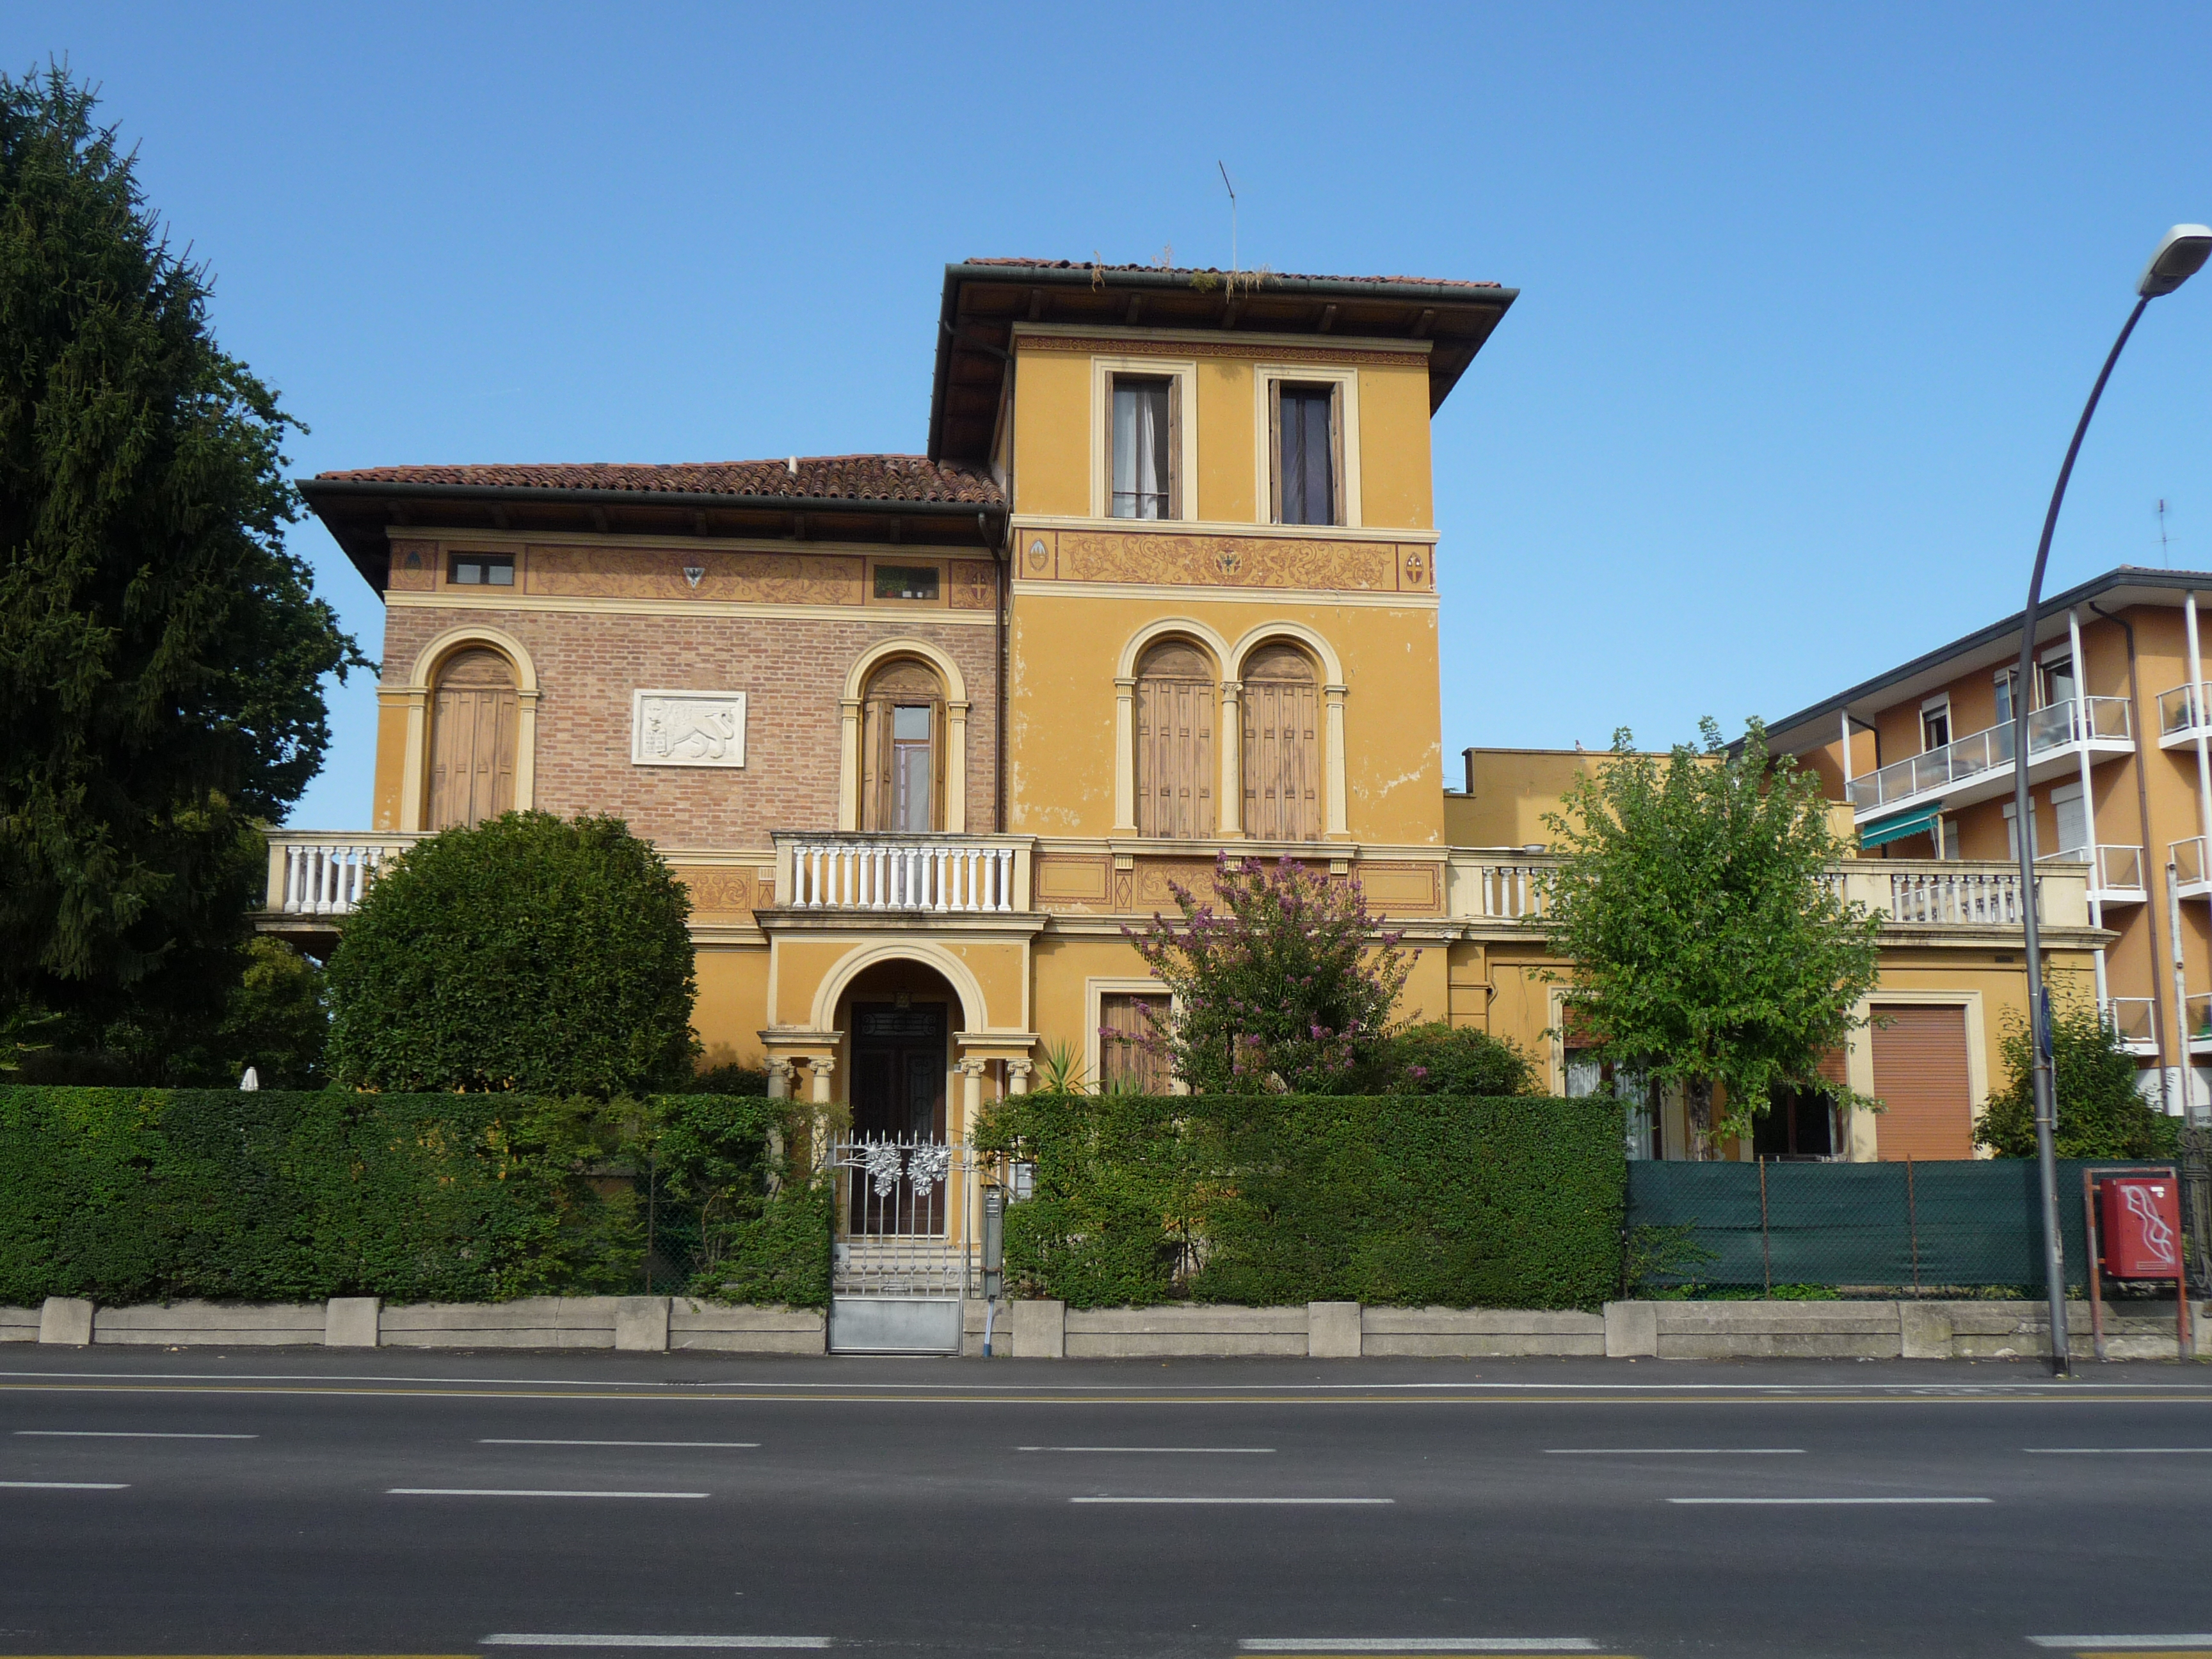 [Abitazione in via IV Novembre] (casa) - Treviso (TV) 